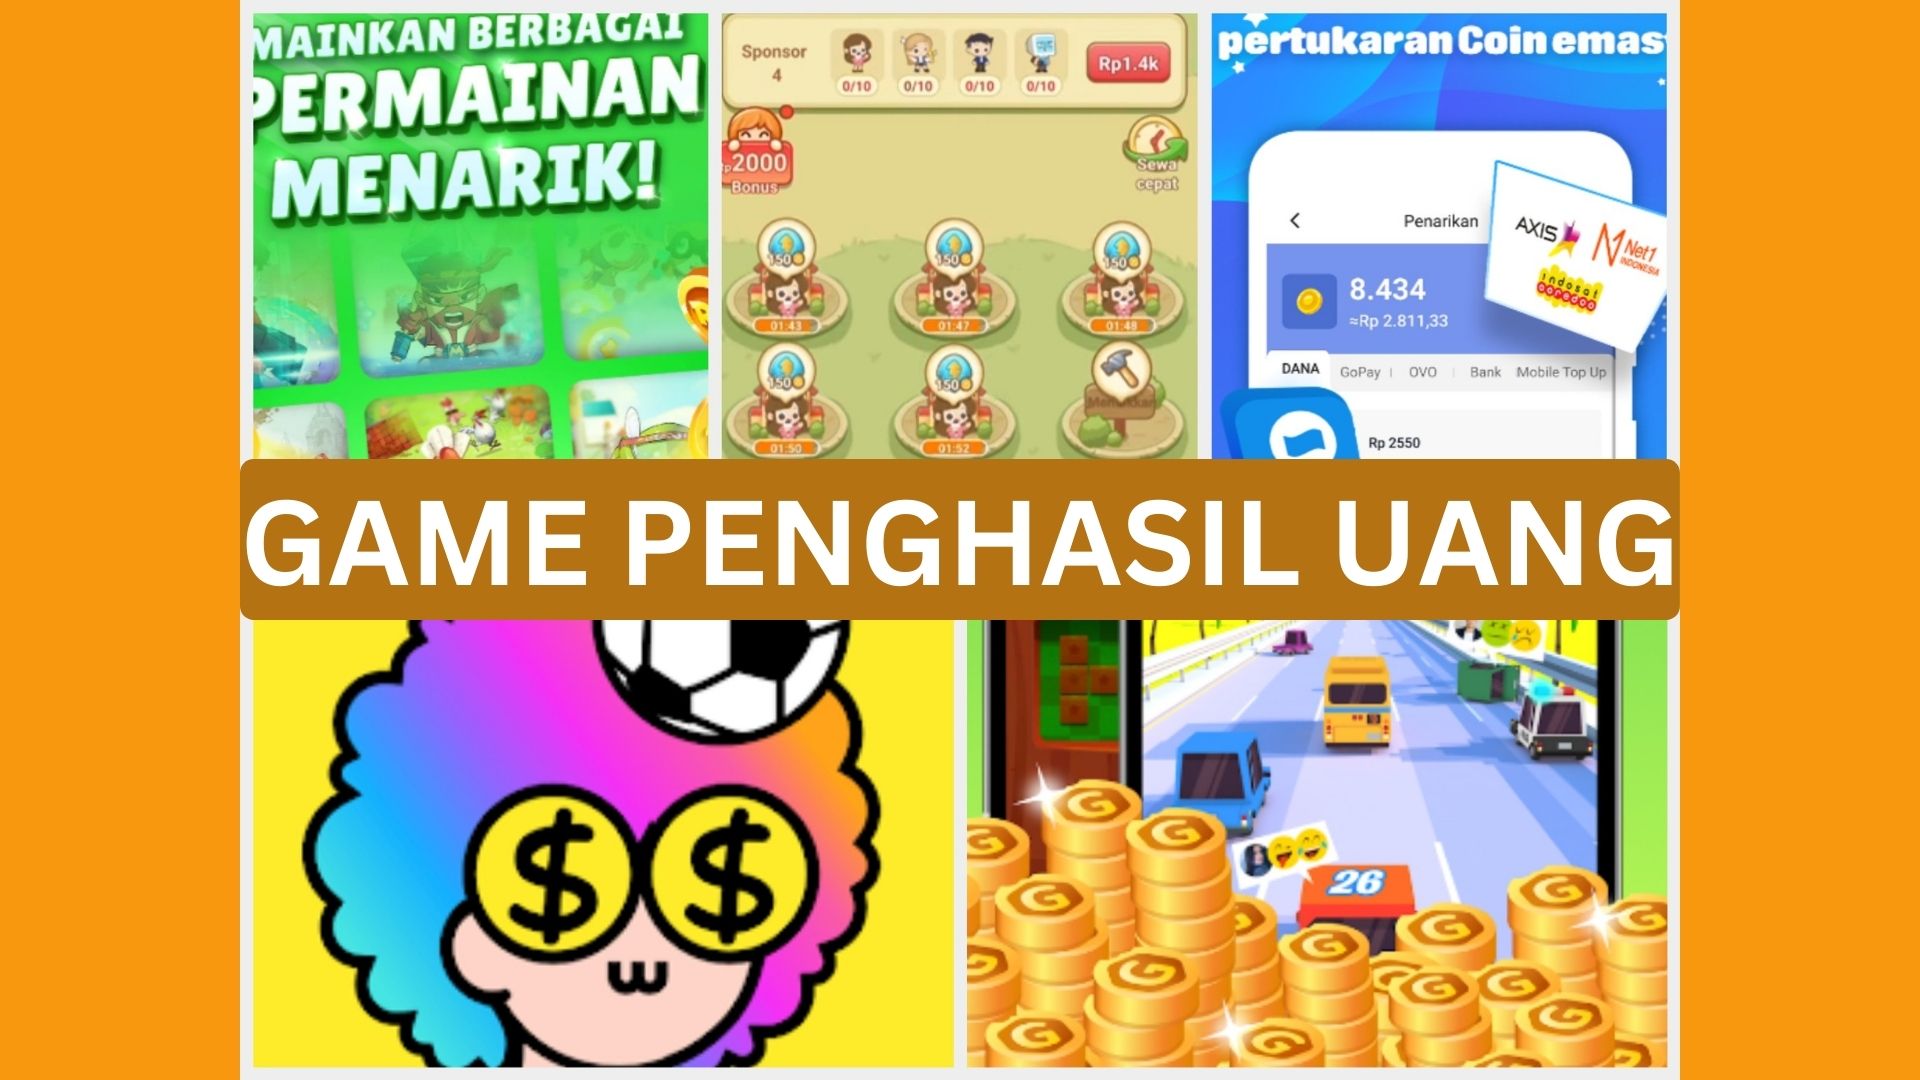 Deretan Game Penghasil Uang Bisa Cair Ke DANA/ Kolase Play.google.com